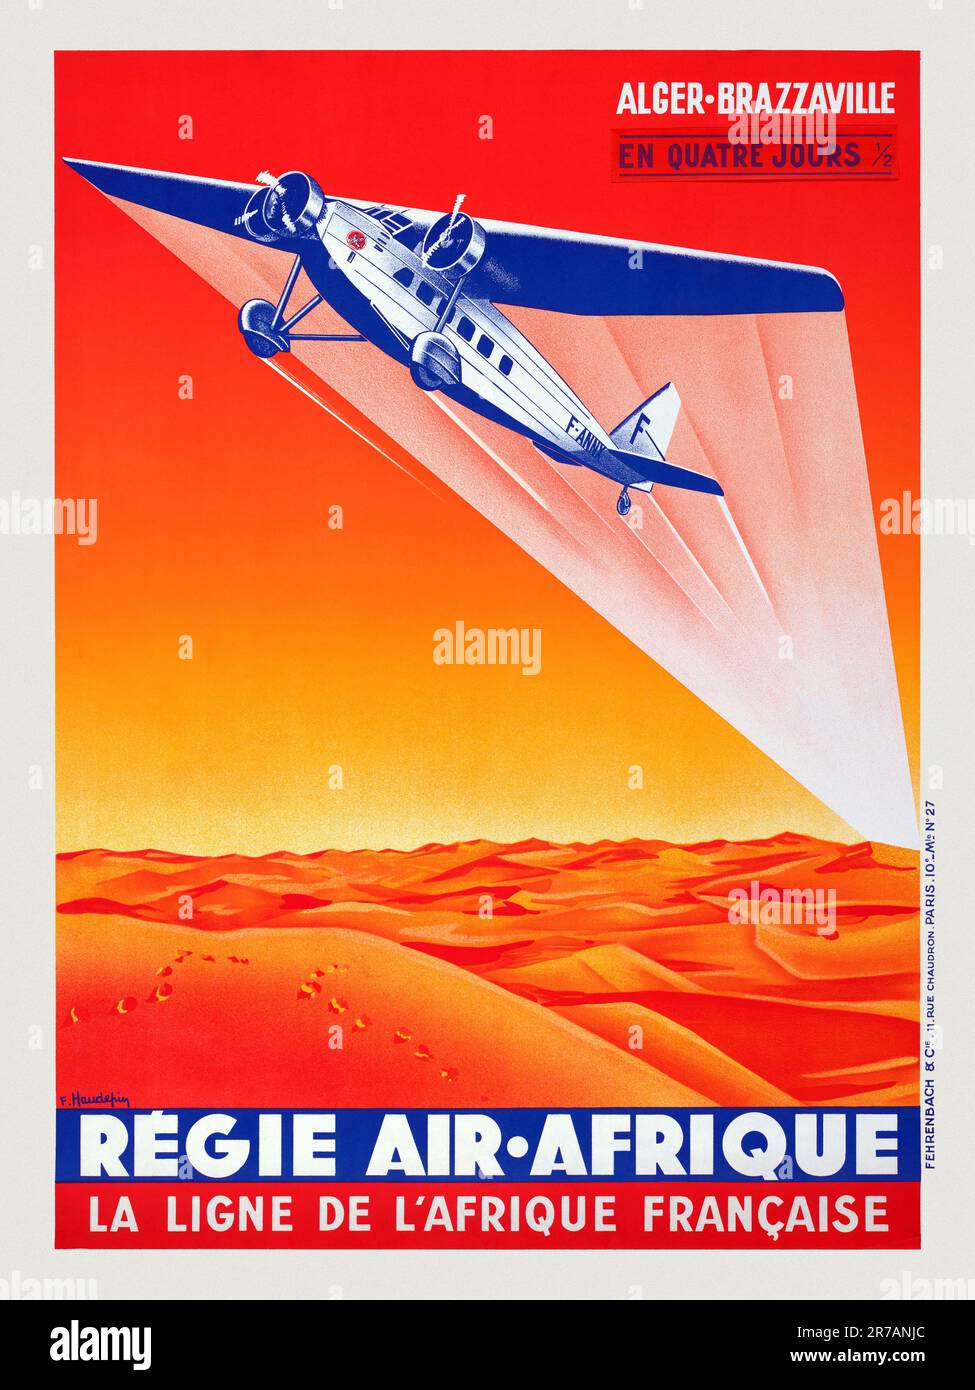 Régie Air Afrique. La Ligne de L'Afrique Francaise by F. Haudefiy (dates unknown). Poster published in 1935 in France. Stock Photo